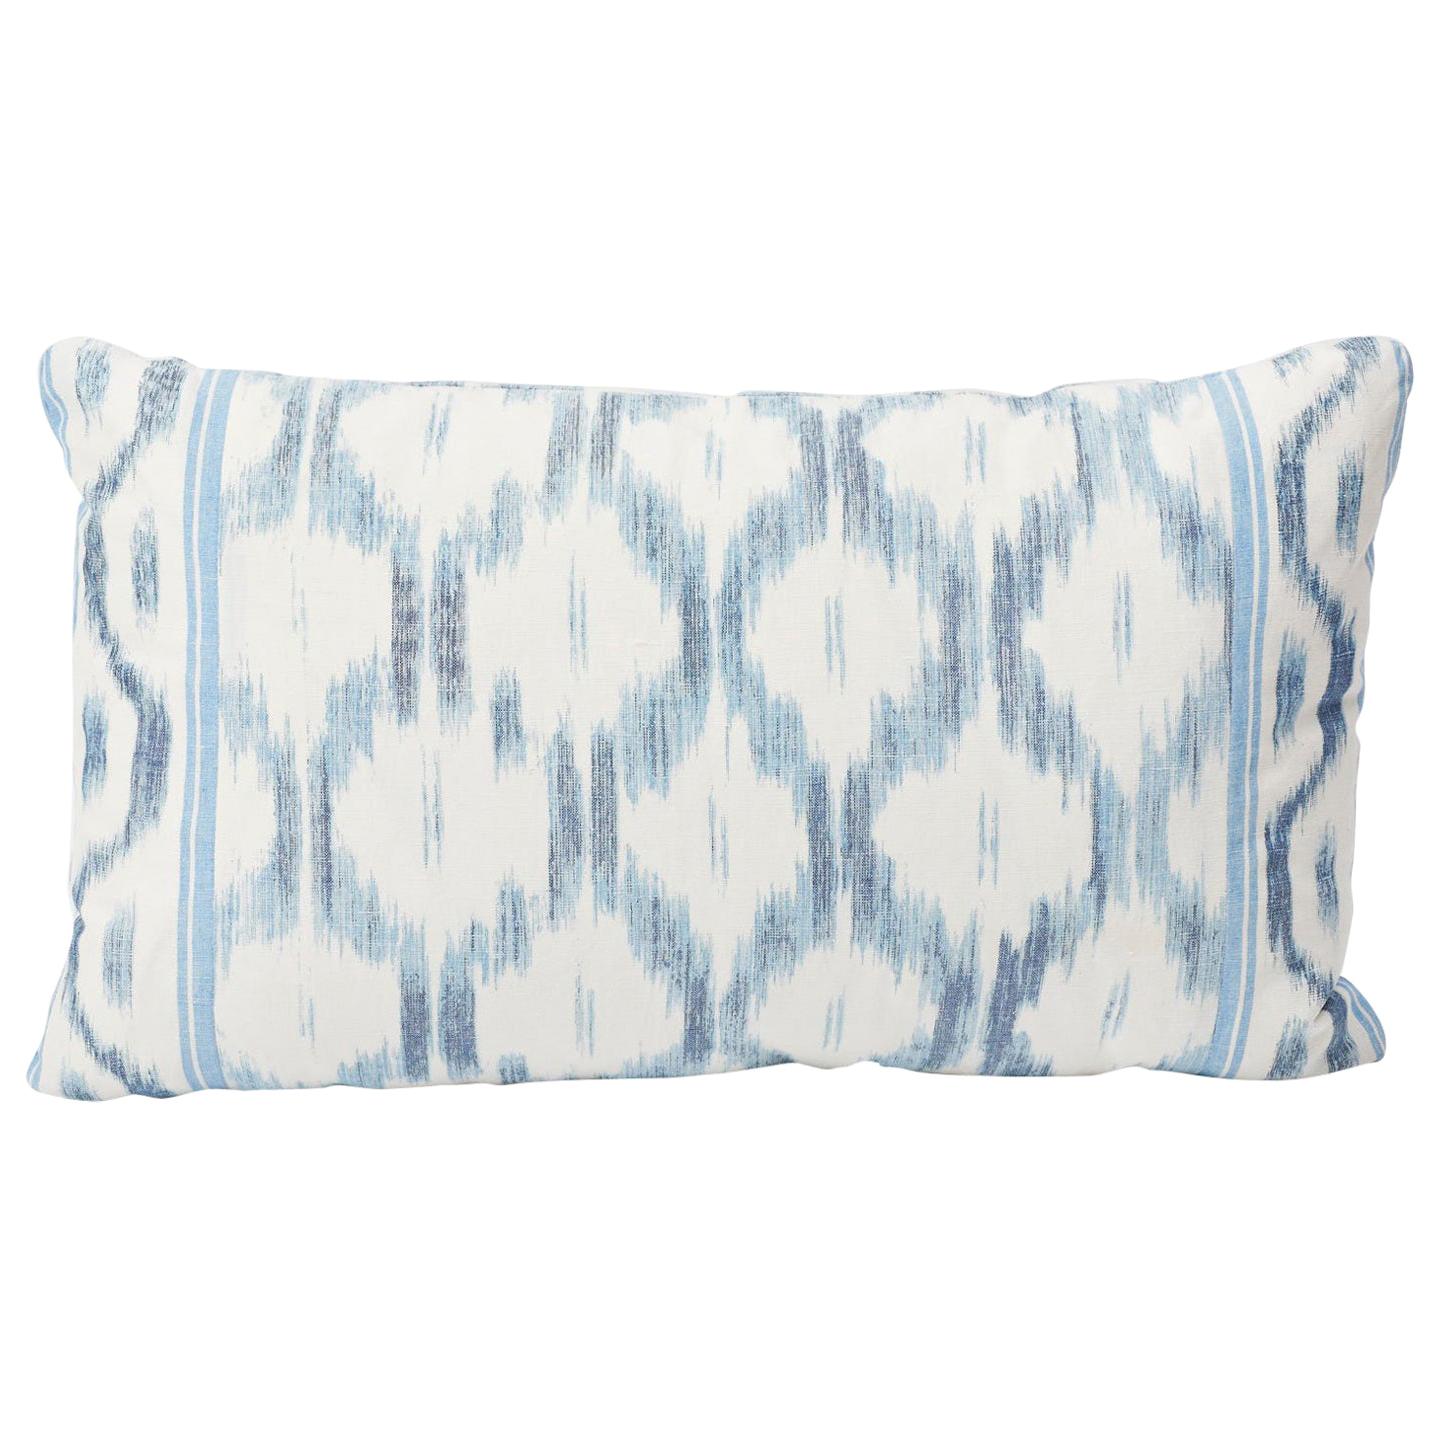 Schumacher Mark D. Sikes Santa Monica Ikat Indigo Blue Lumbar Pillow For Sale